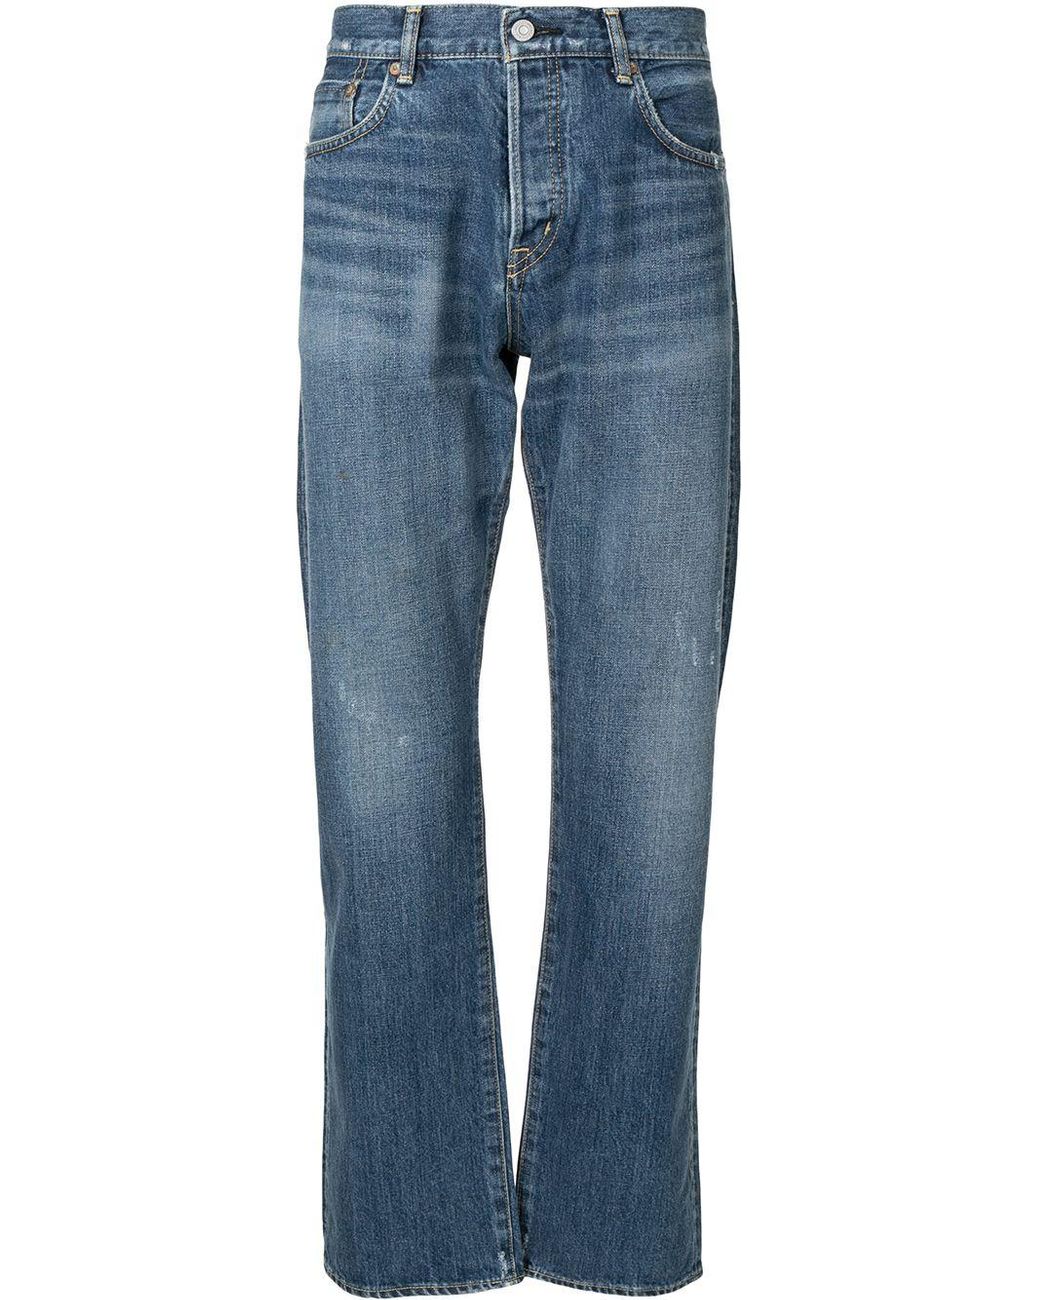 Moussy Denim Sulphur Straight Jeans in Blue for Men - Lyst